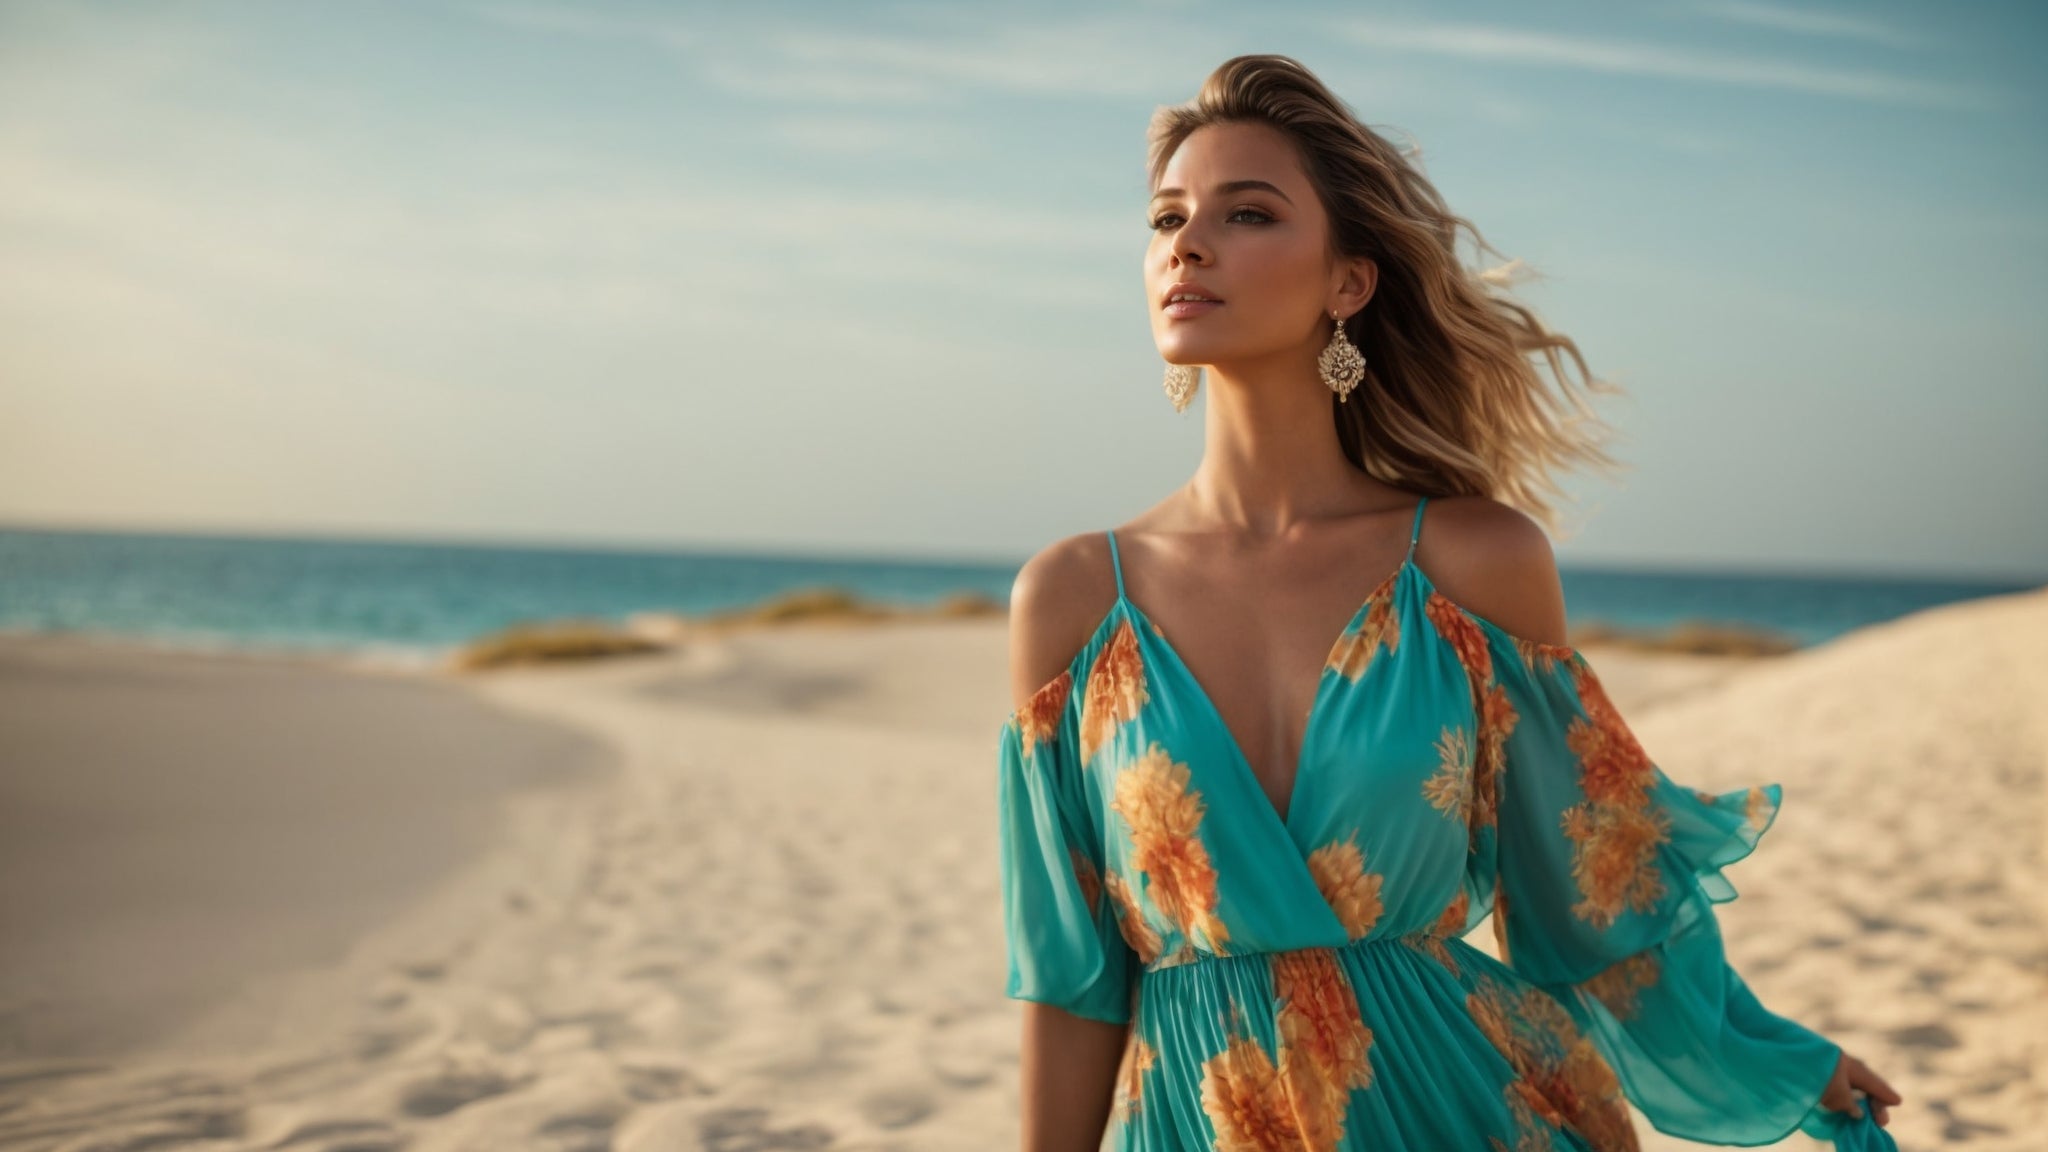 मैक्सी लंबी पोशाक: छुट्टियों की गर्मियों की शामों, पार्टियों और समुद्र तट पर घूमने के लिए सर्वोत्तम विकल्प